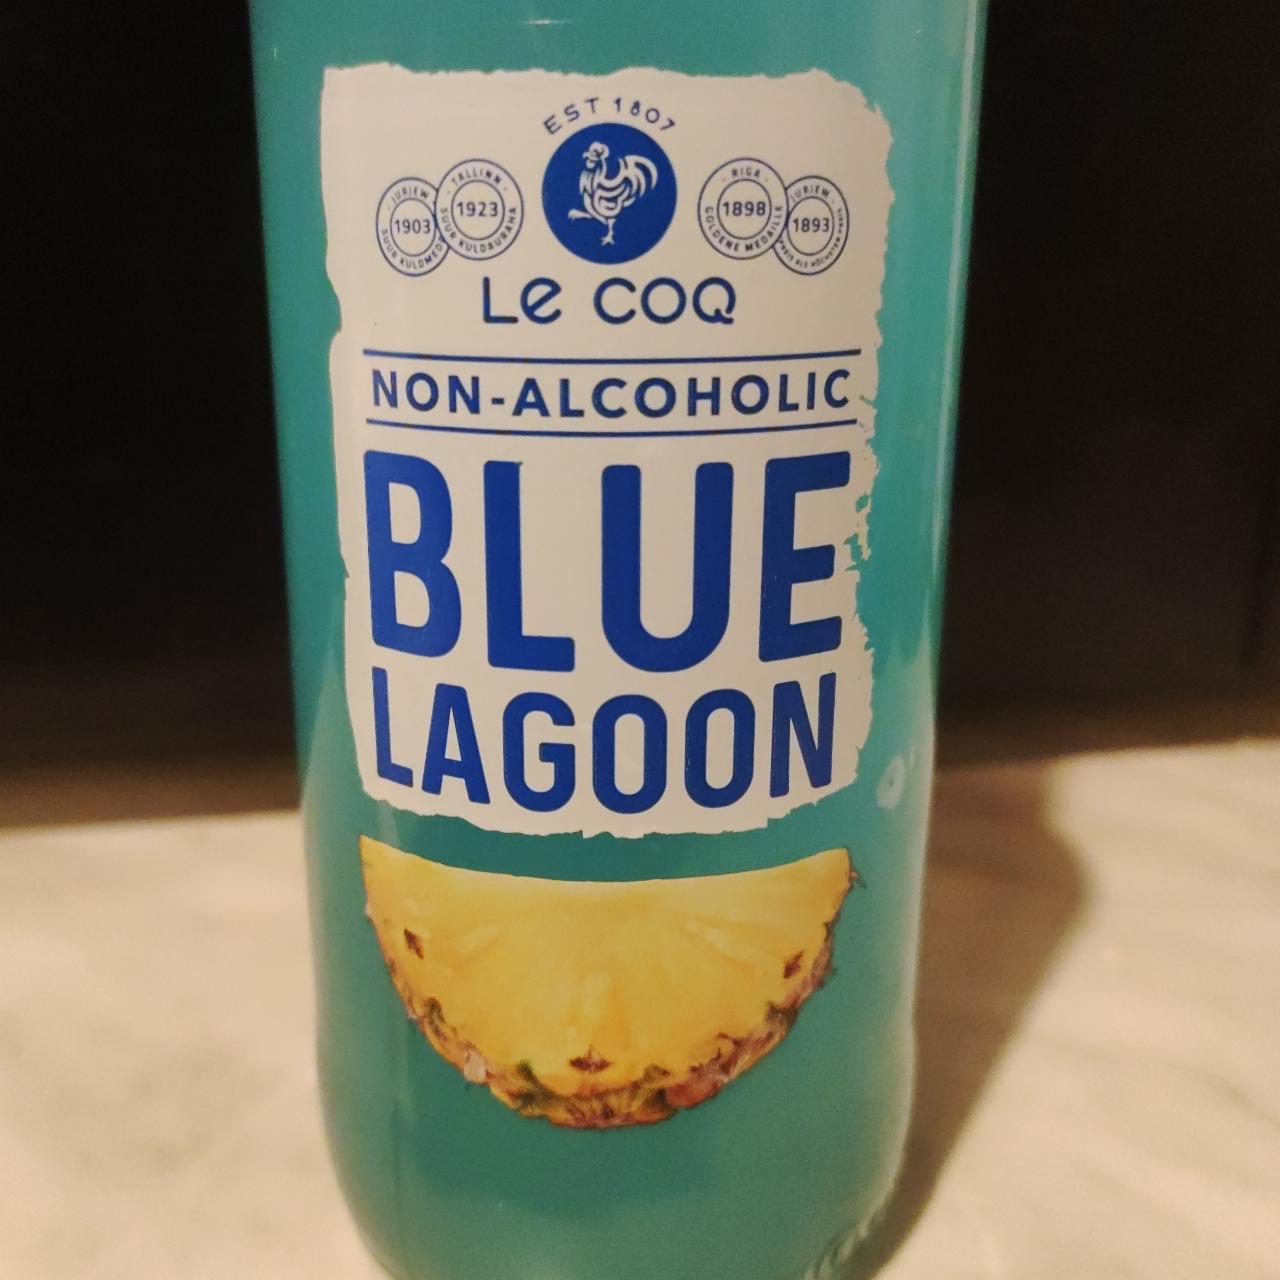 Фото - Blue lagoon non-alcoholic голубая лагуна Le Coq